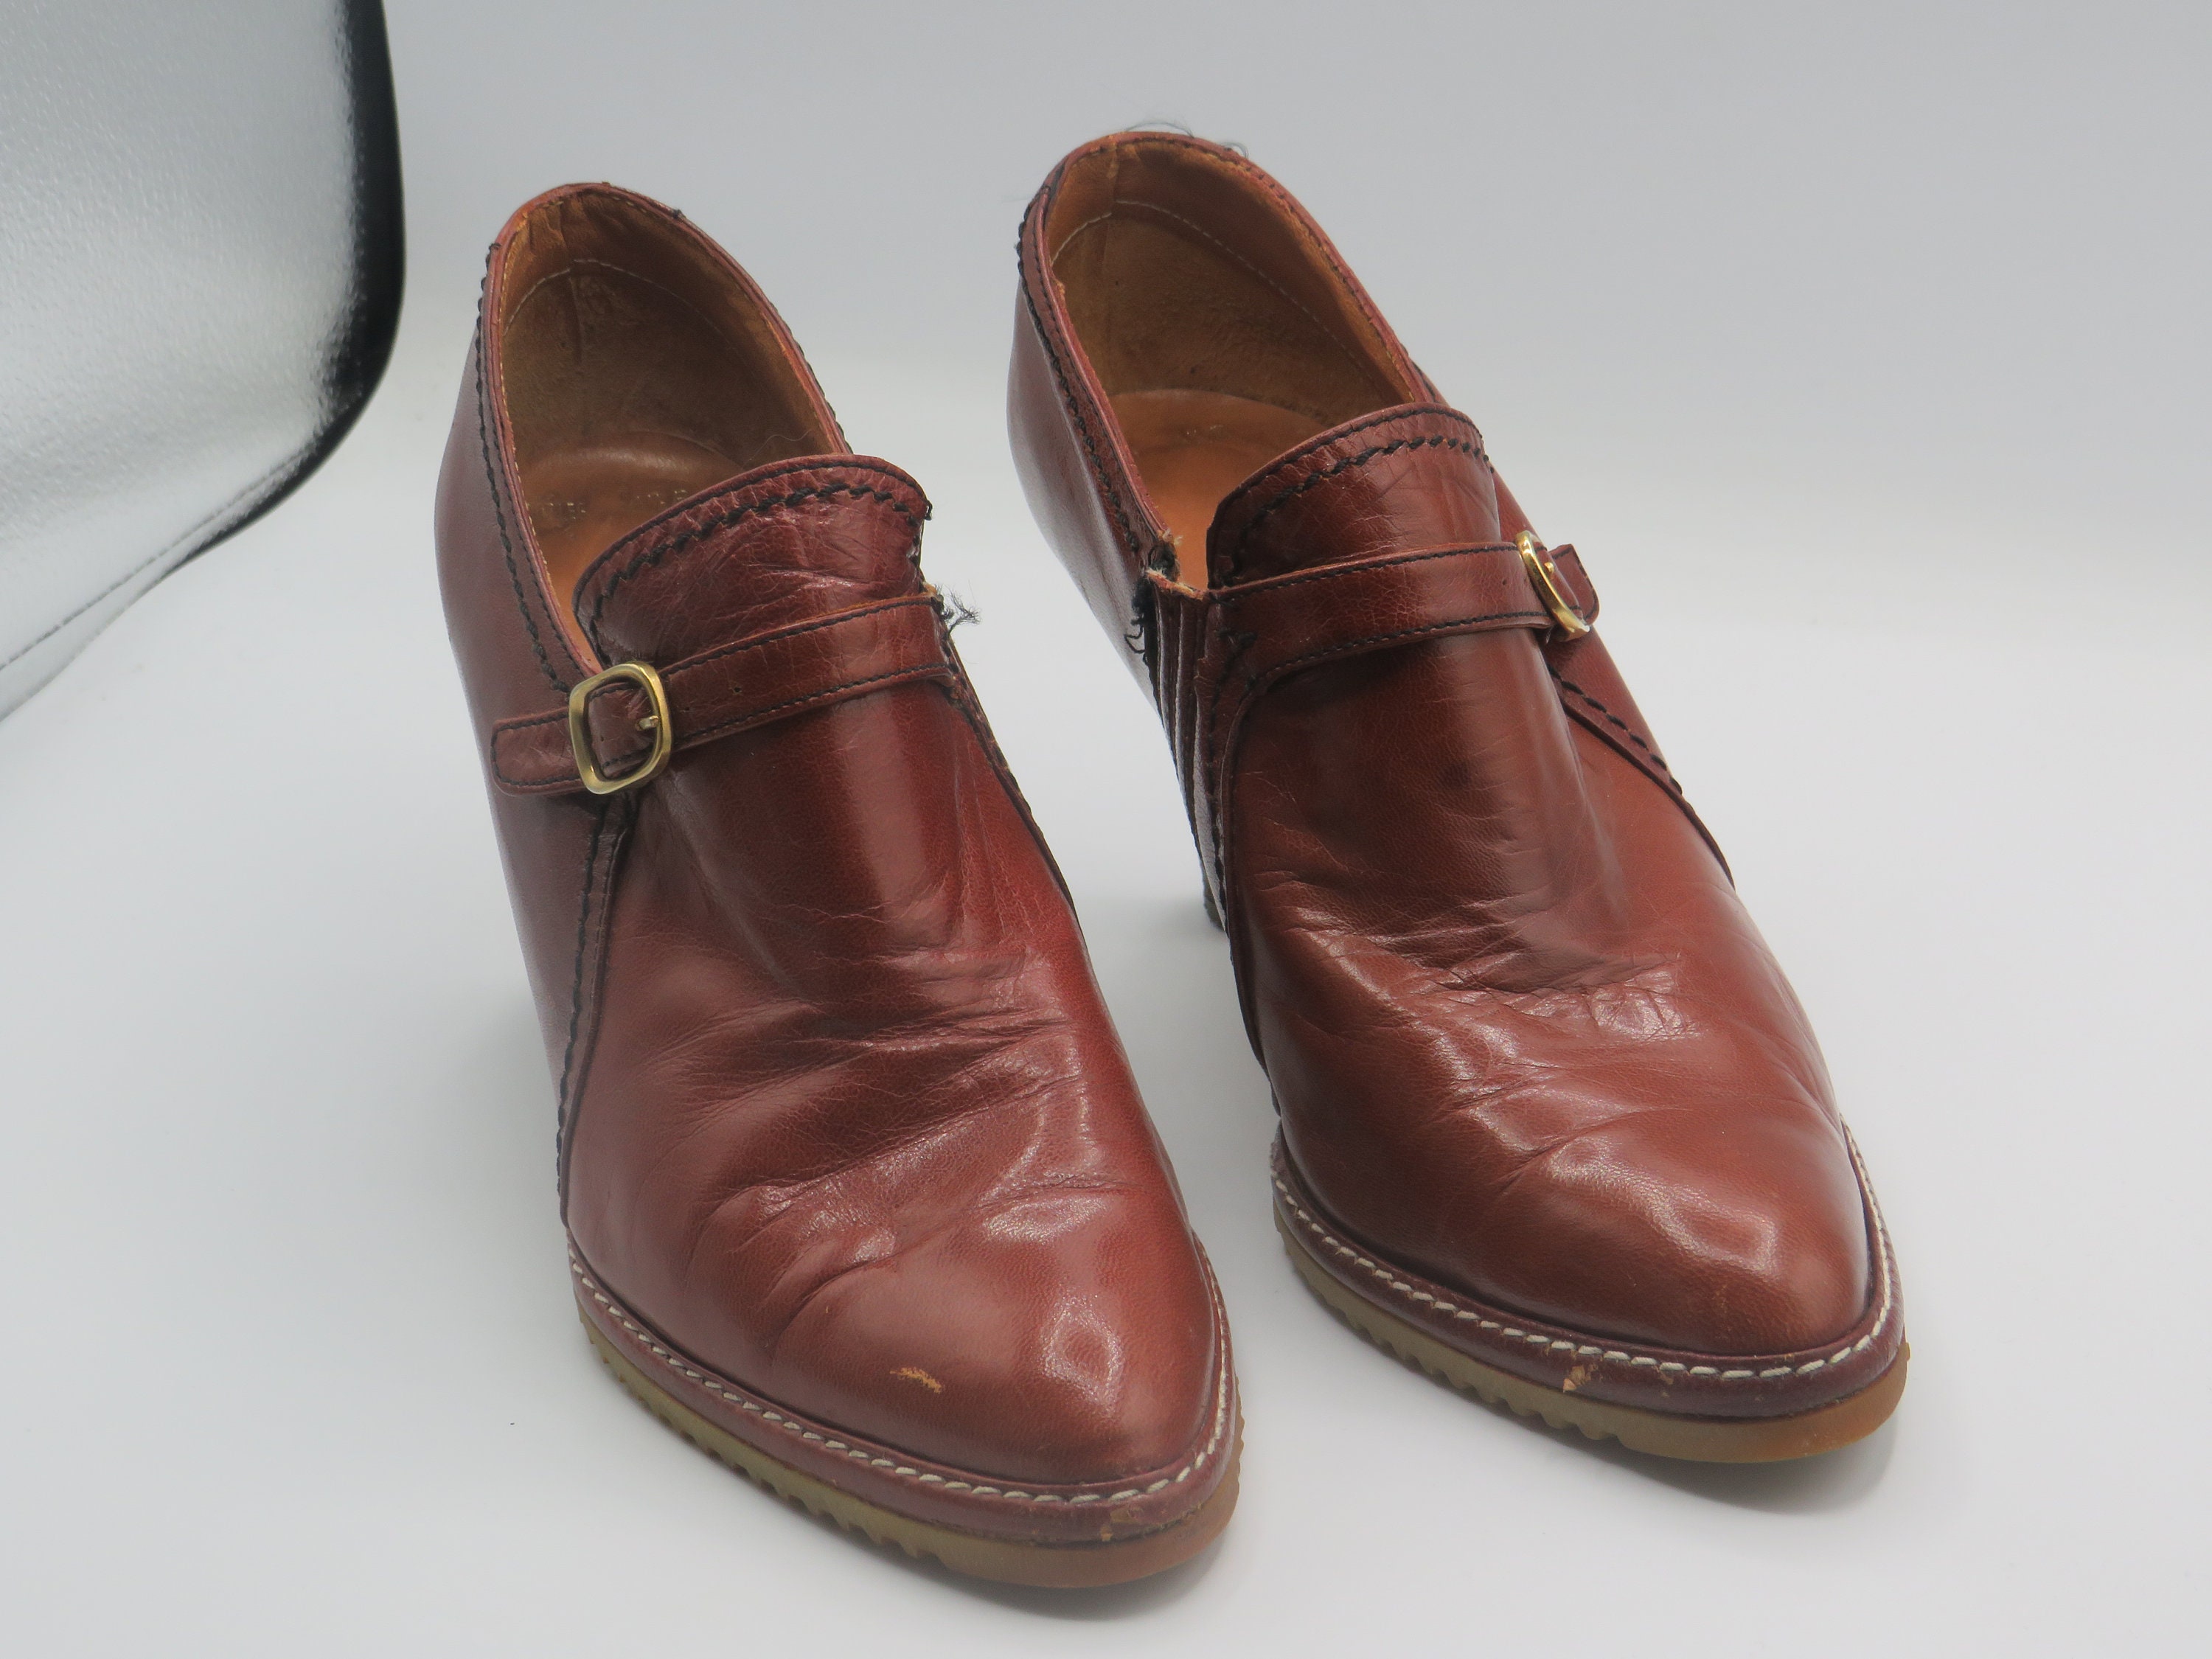 Spanish Leather Shoe - Etsy